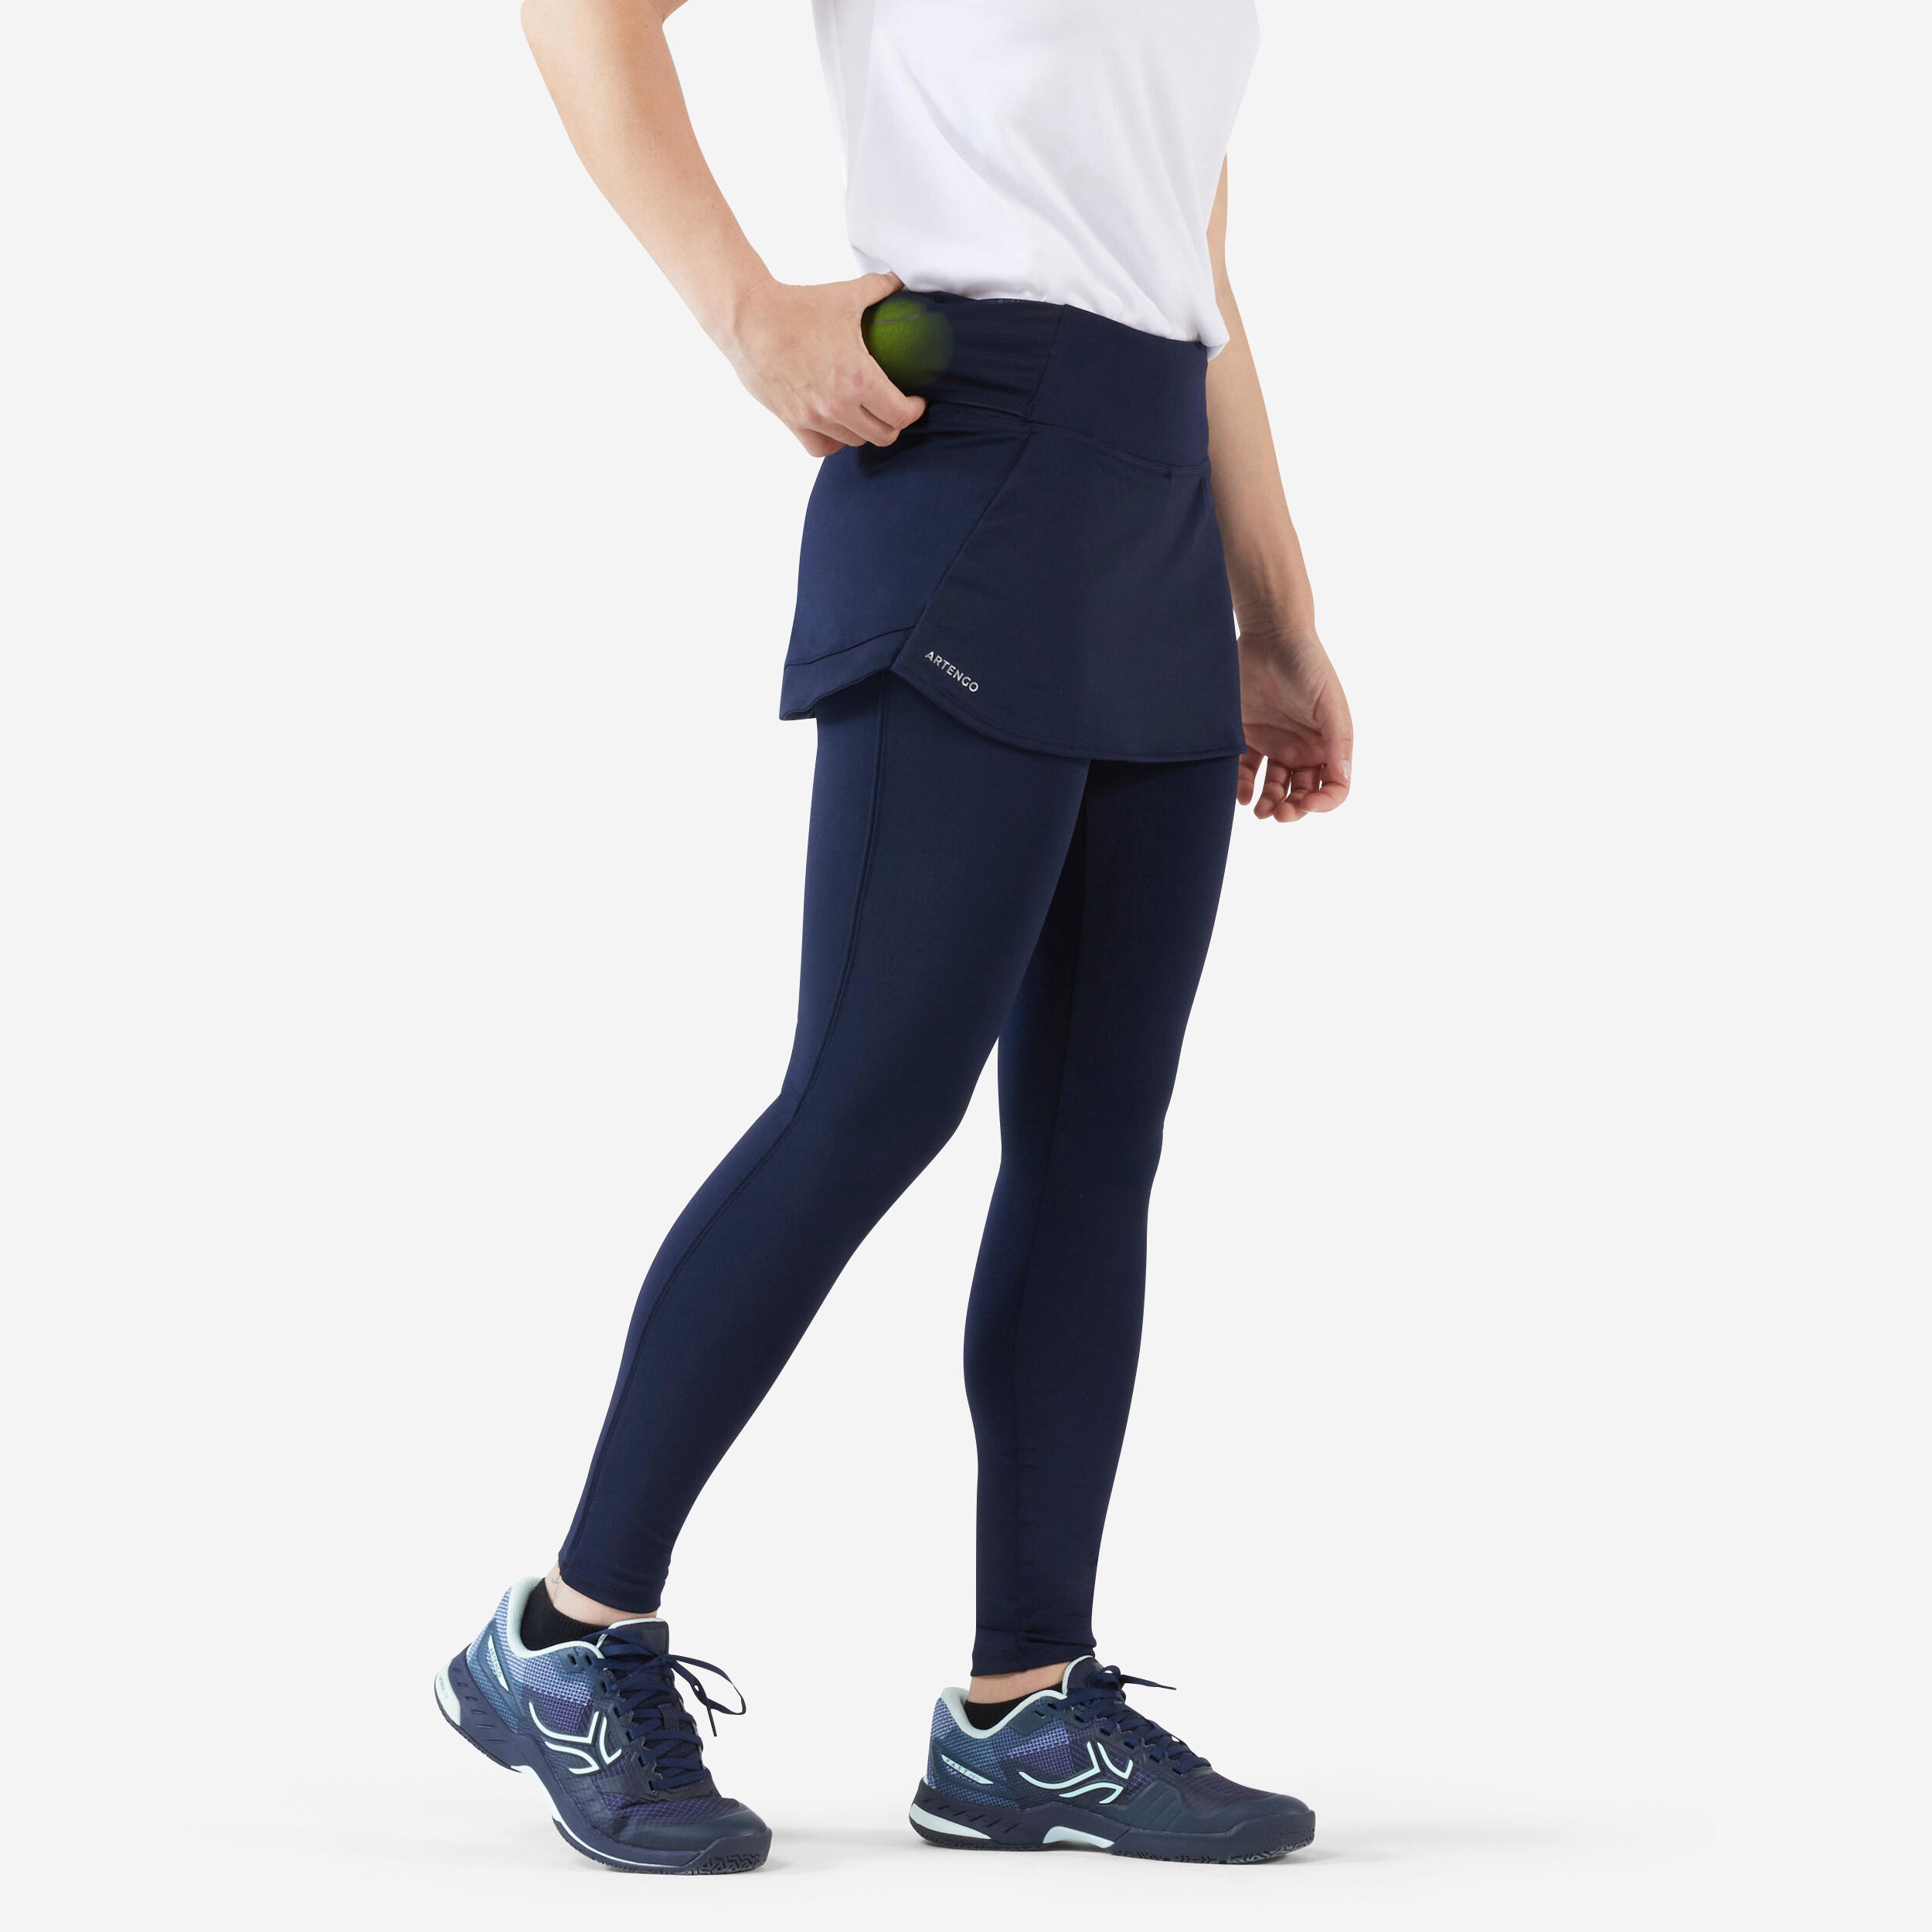 Women's Tennis Hip Ball Skirt + Leggings Dry - Blue/Black 1/7